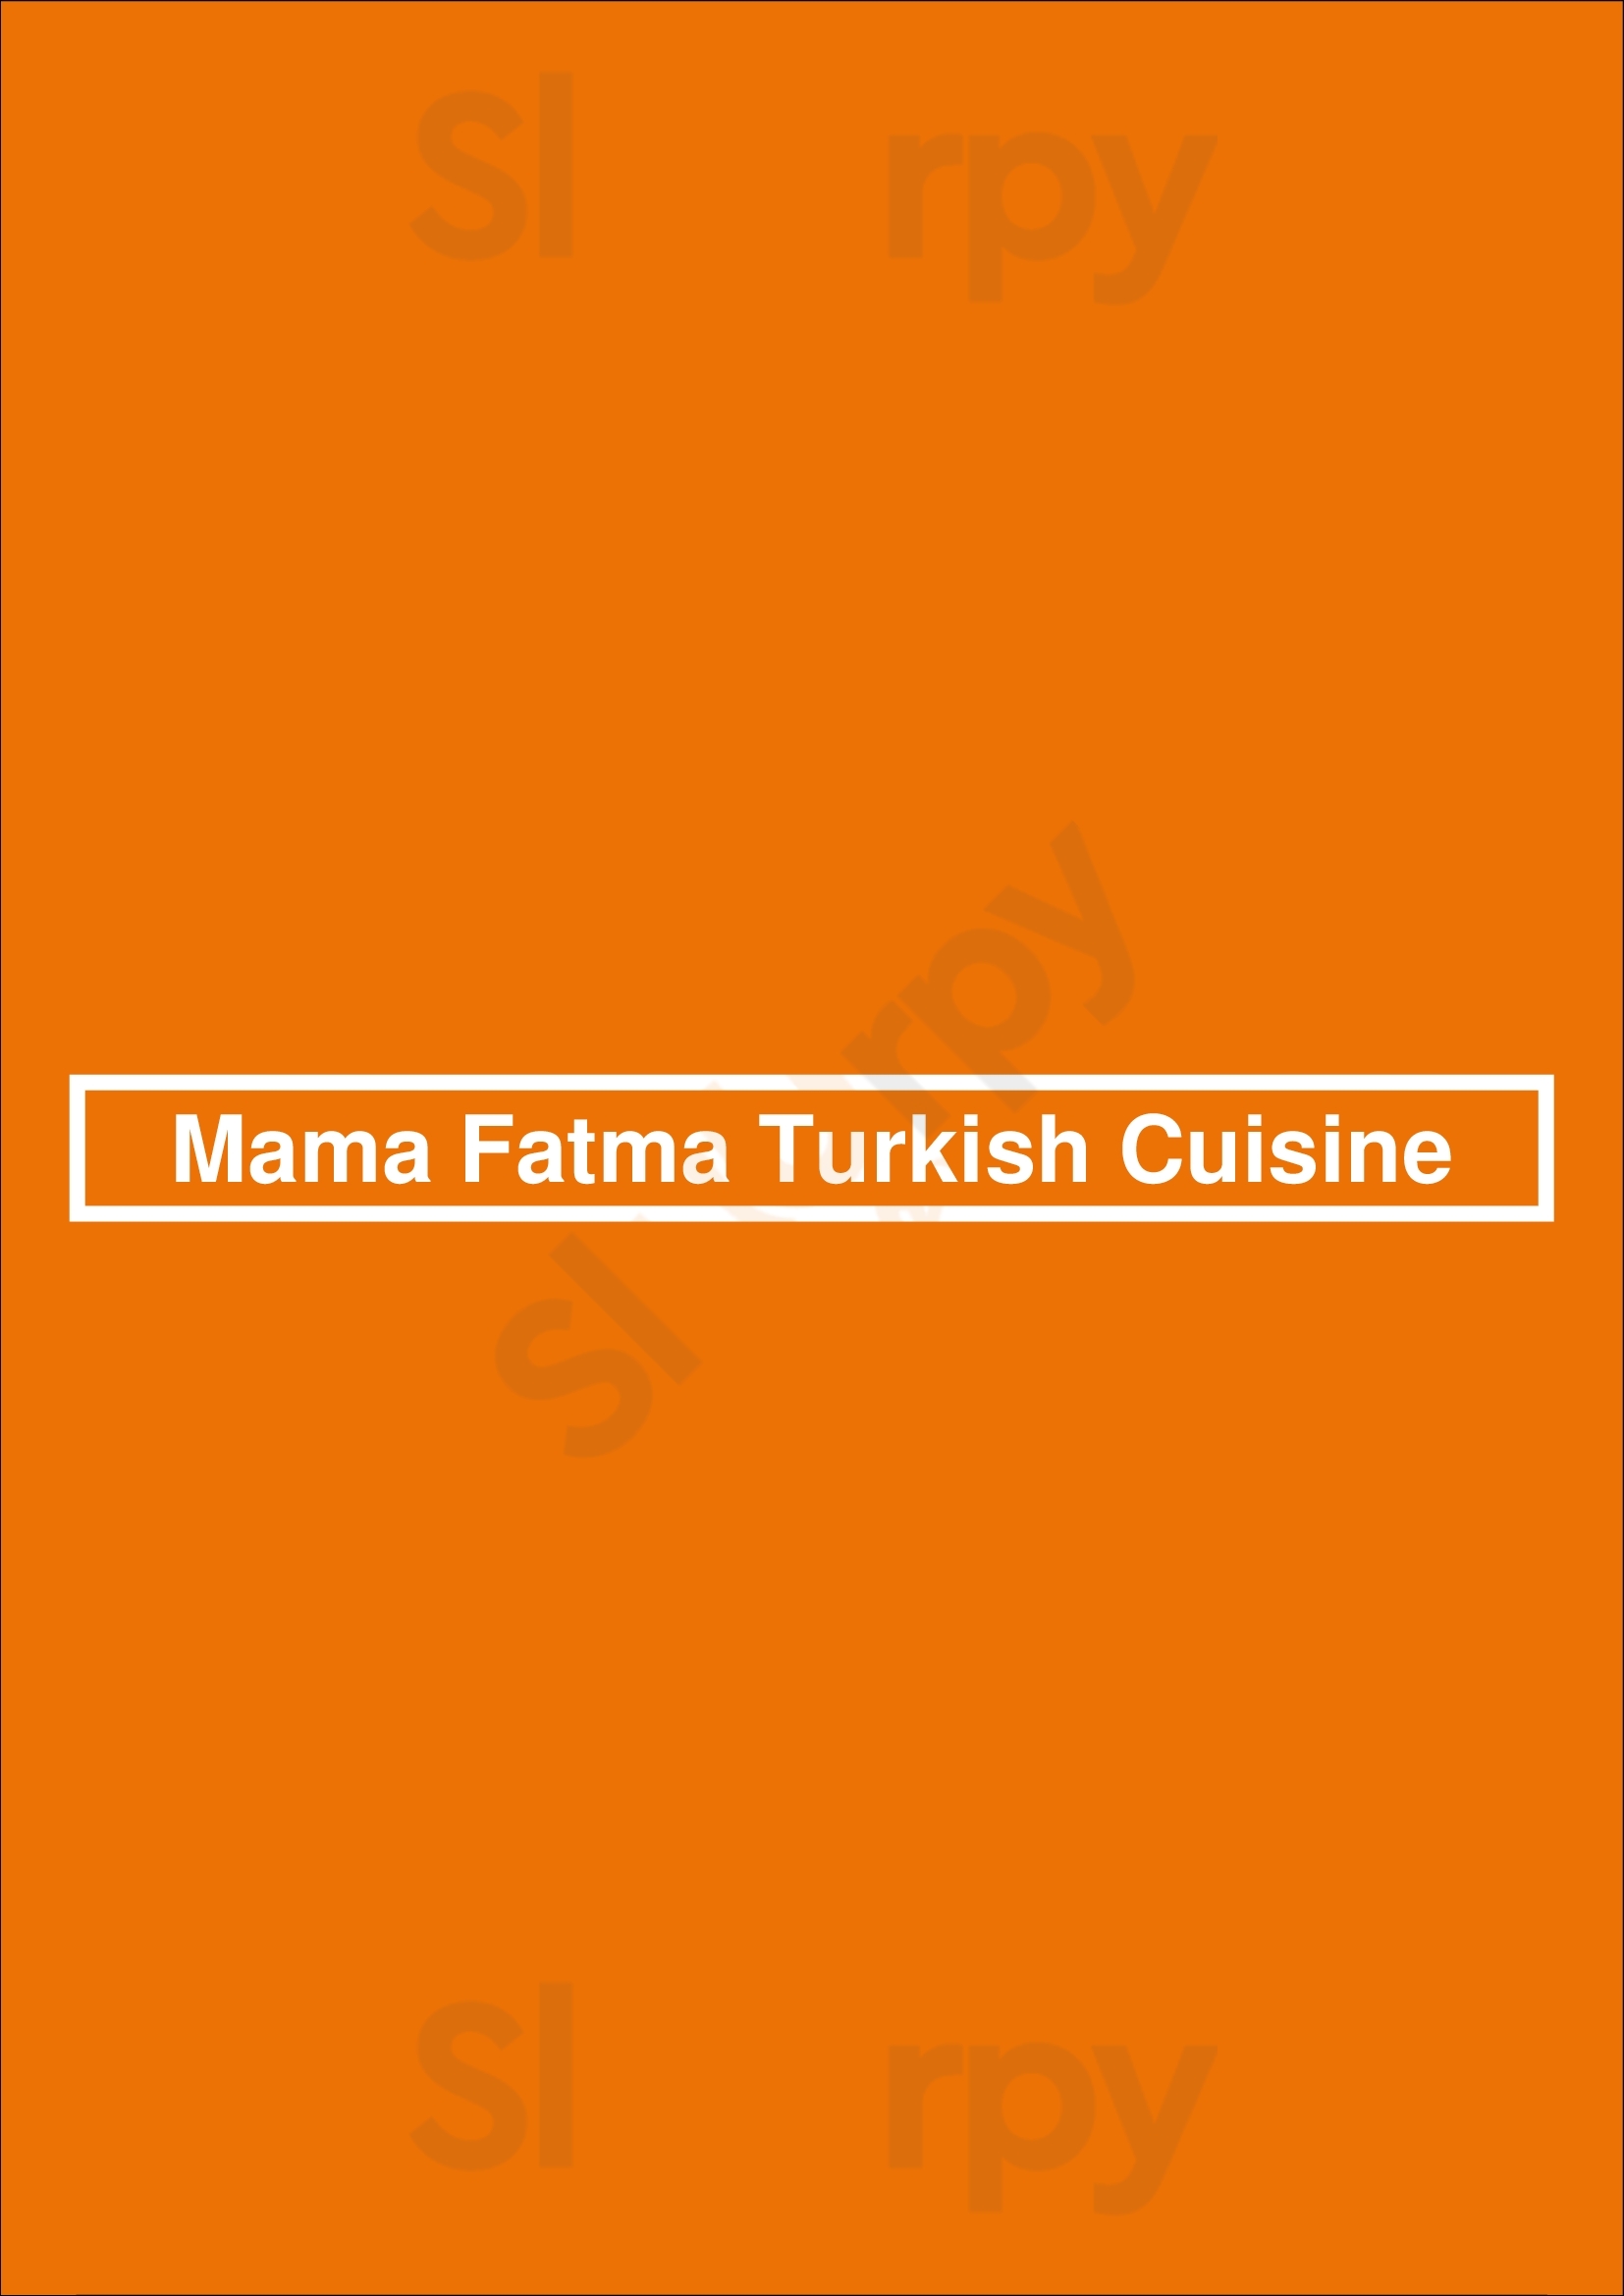 Mama Fatma Turkish Cuisine Woodbridge Menu - 1